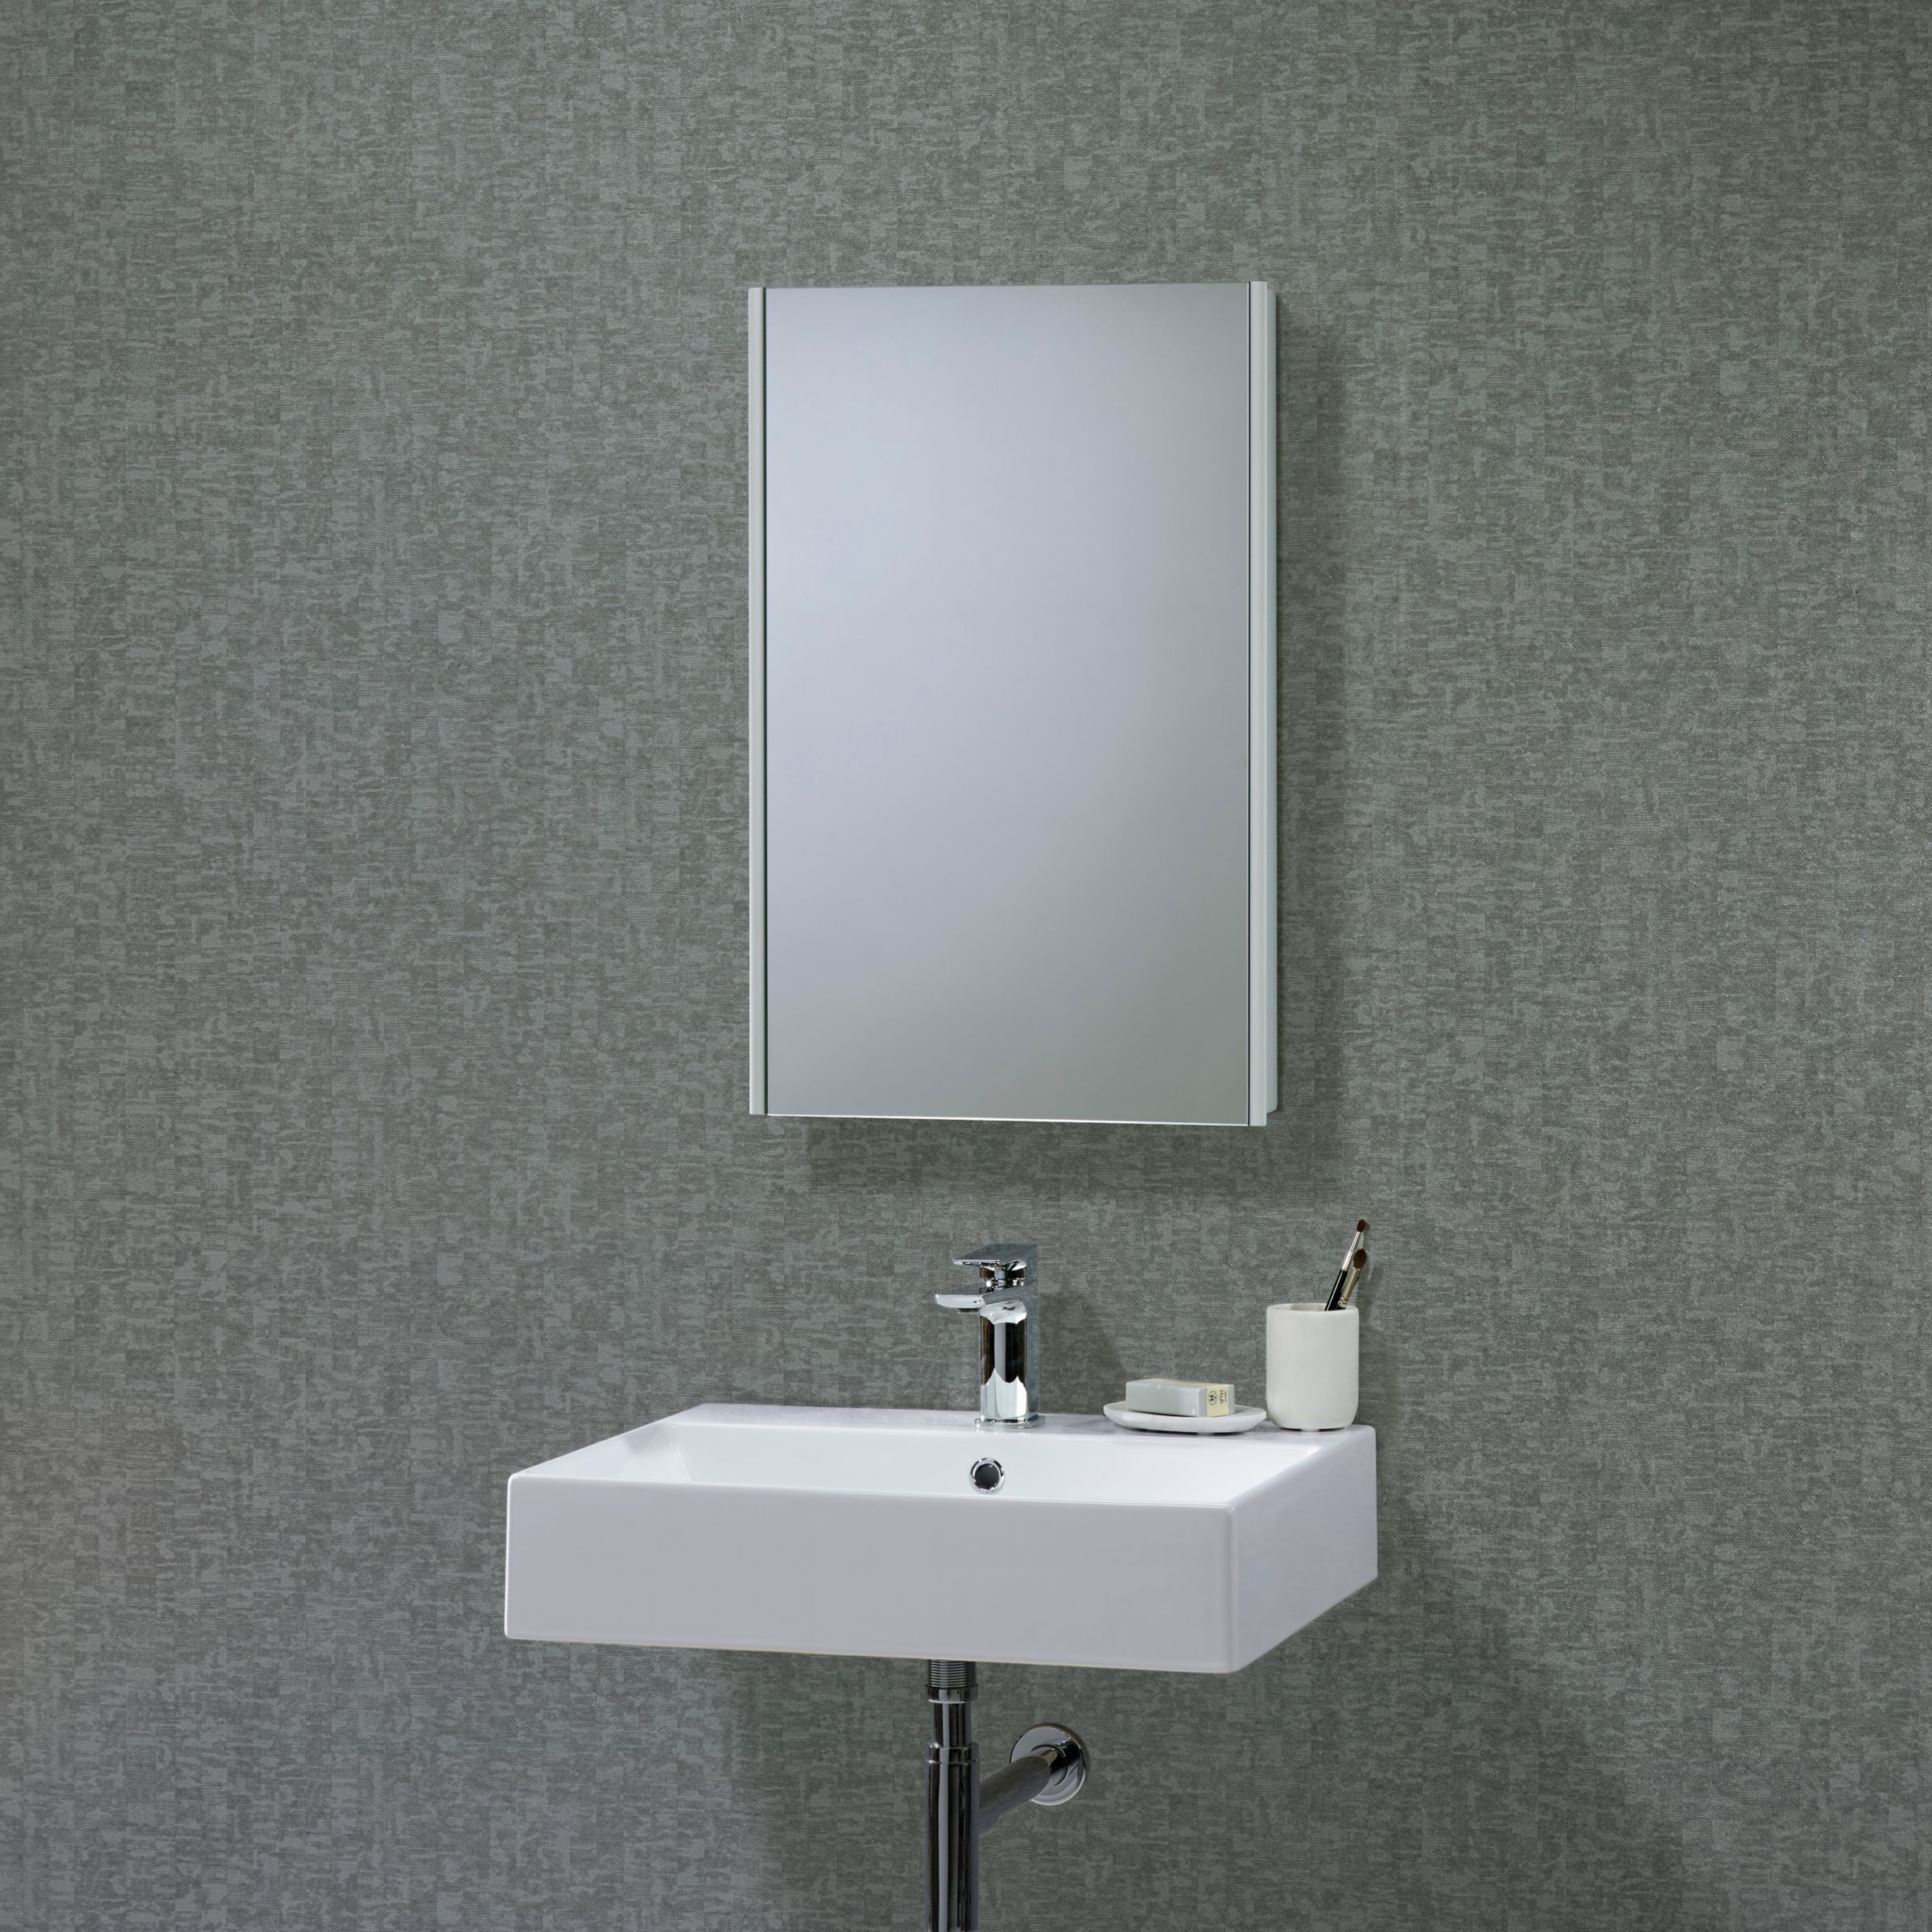 Roper Rhodes Limit Slimline Single Mirrored Bathroom Cabinet